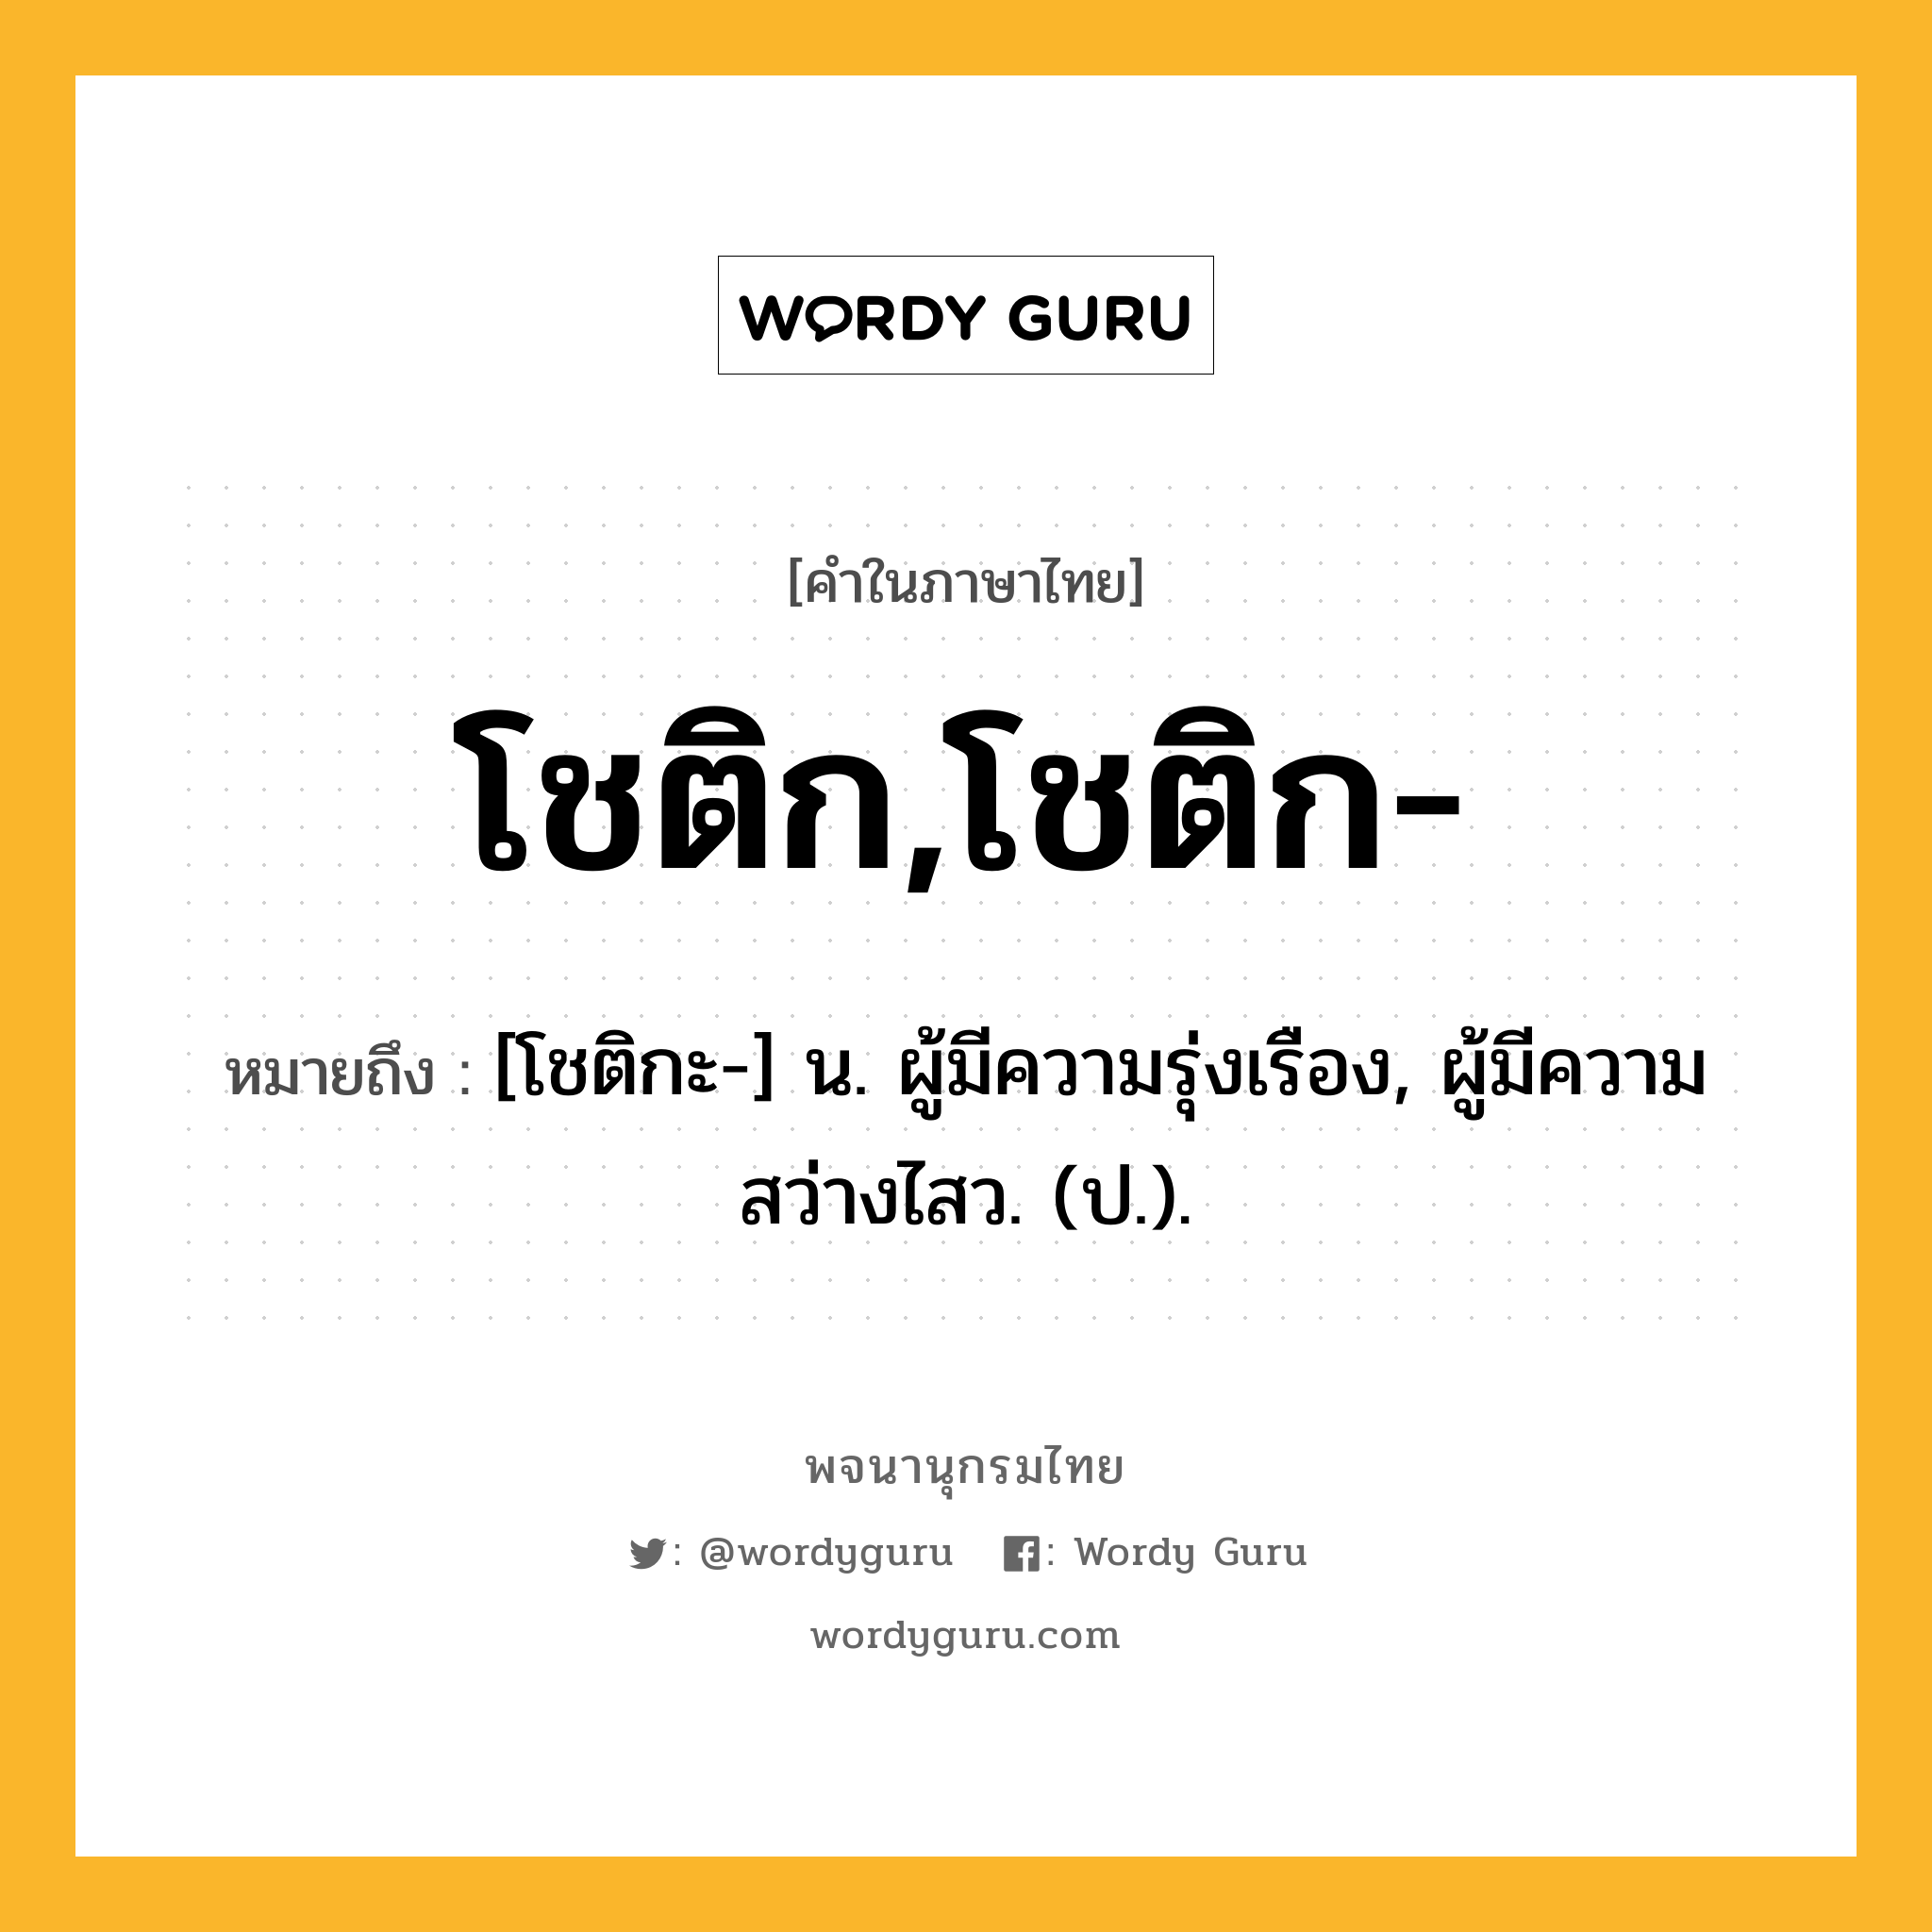 โชติก,โชติก- ความหมาย หมายถึงอะไร?, คำในภาษาไทย โชติก,โชติก- หมายถึง [โชติกะ-] น. ผู้มีความรุ่งเรือง, ผู้มีความสว่างไสว. (ป.).